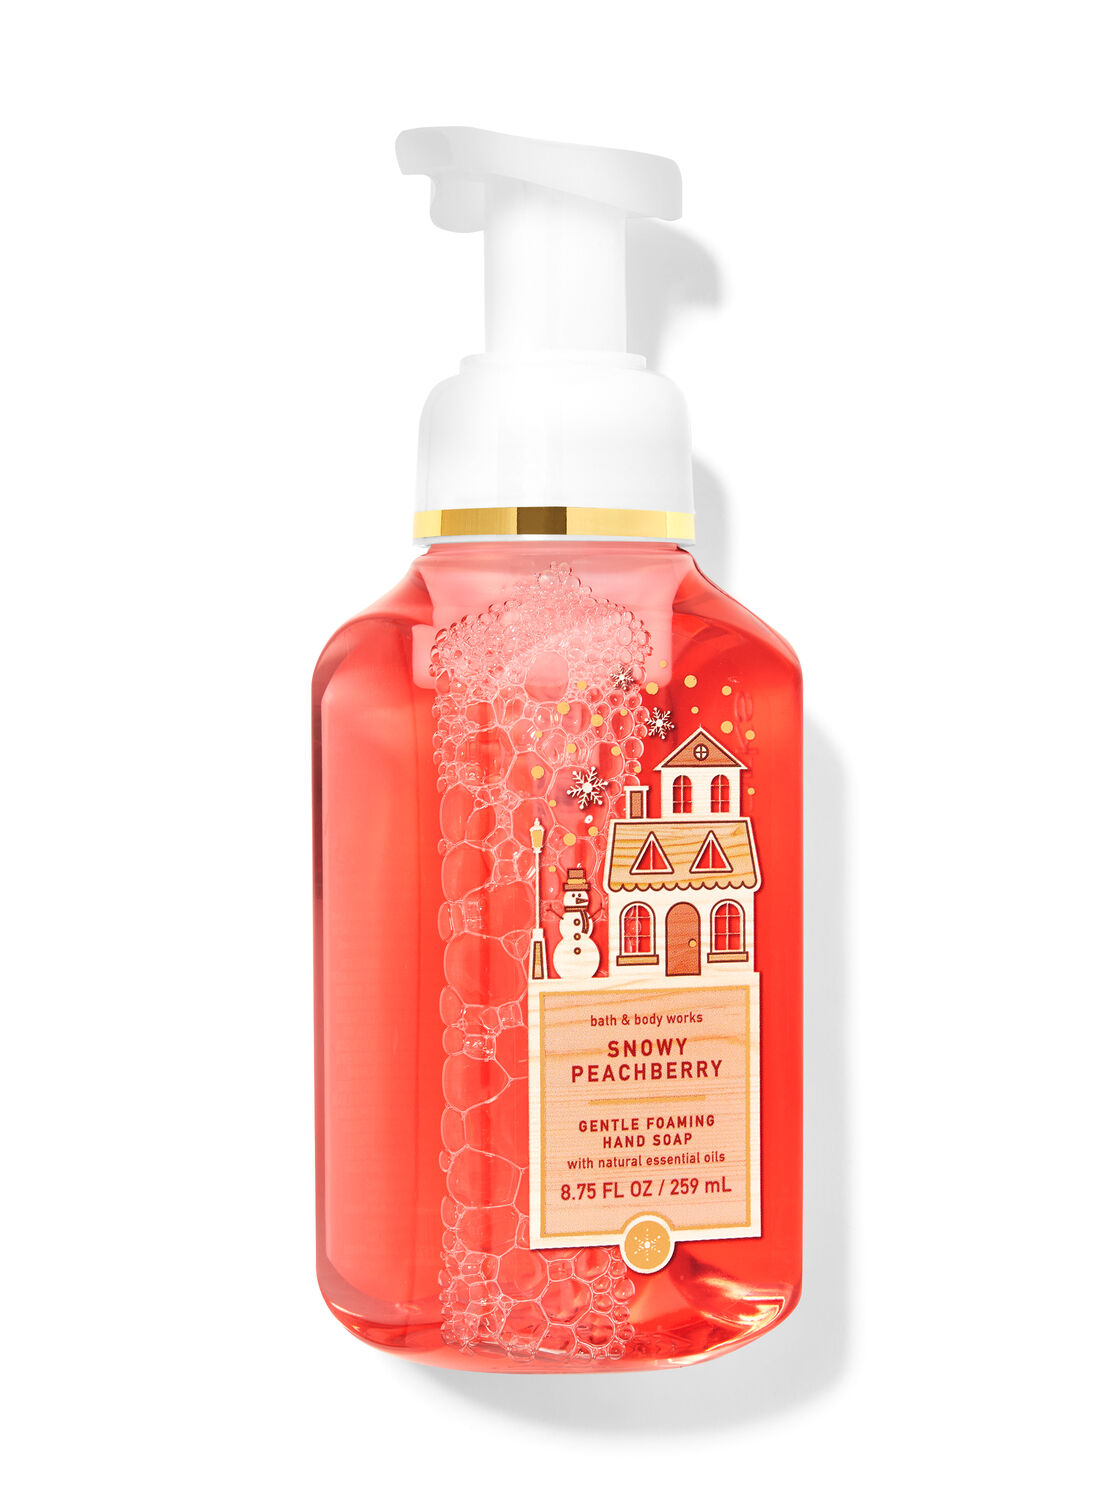 Snowy Peach Berry Gentle Foaming Hand Soap